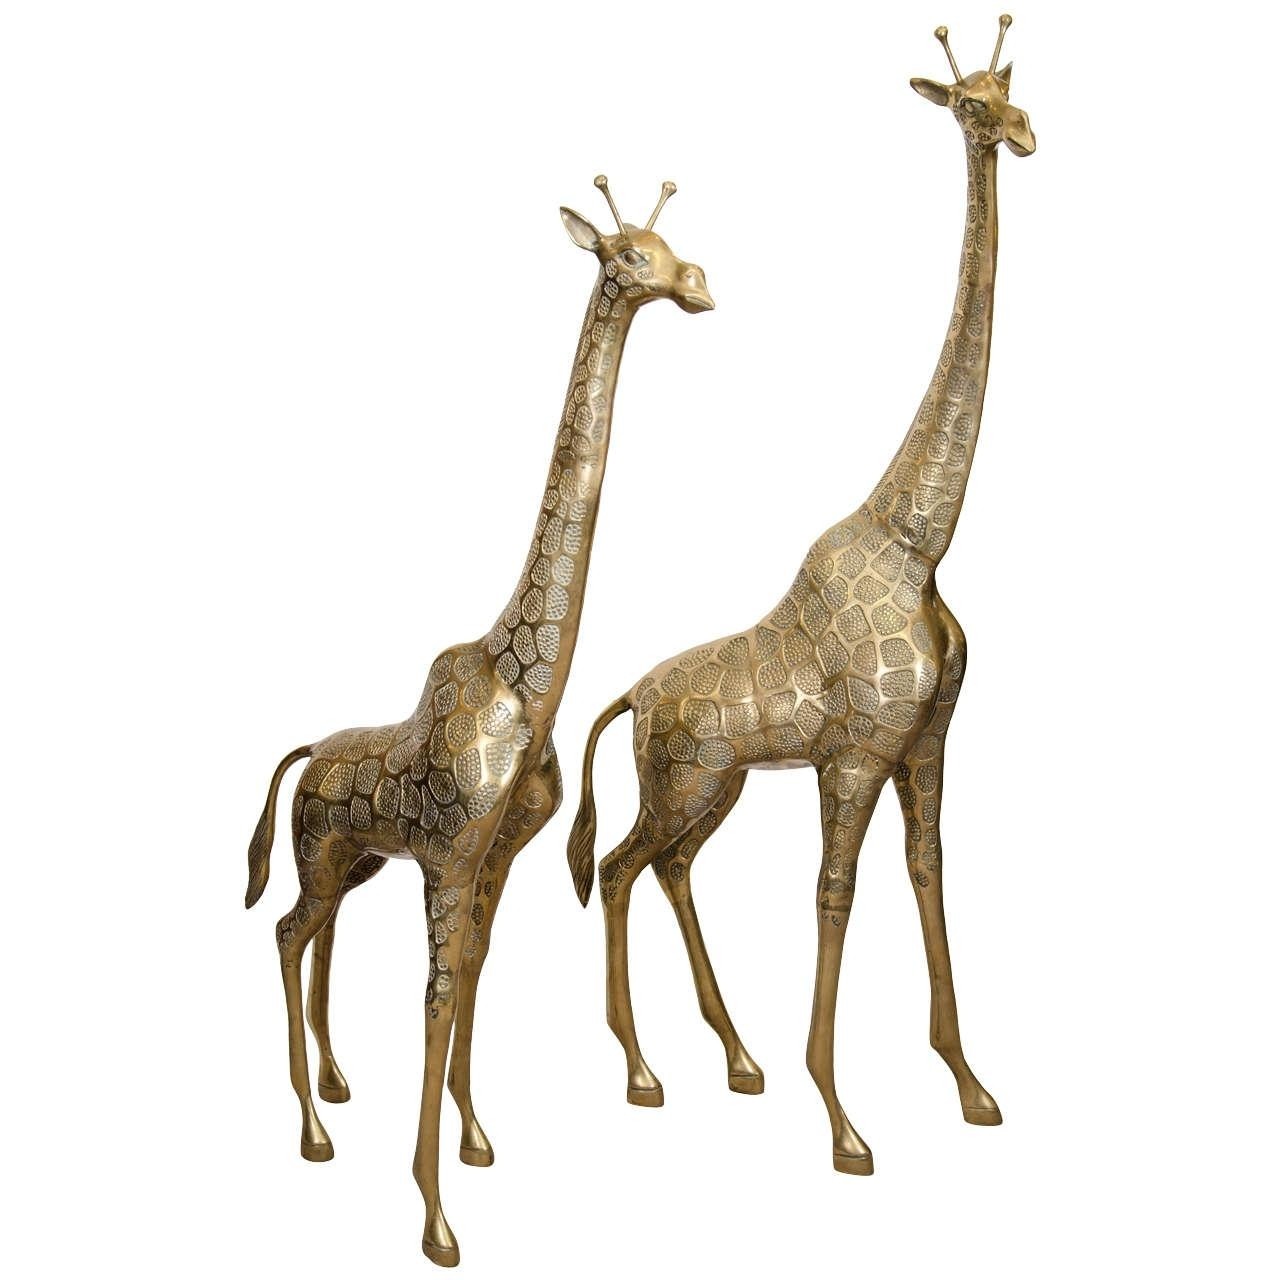 Pair of tall vintage brass giraffe sculptures